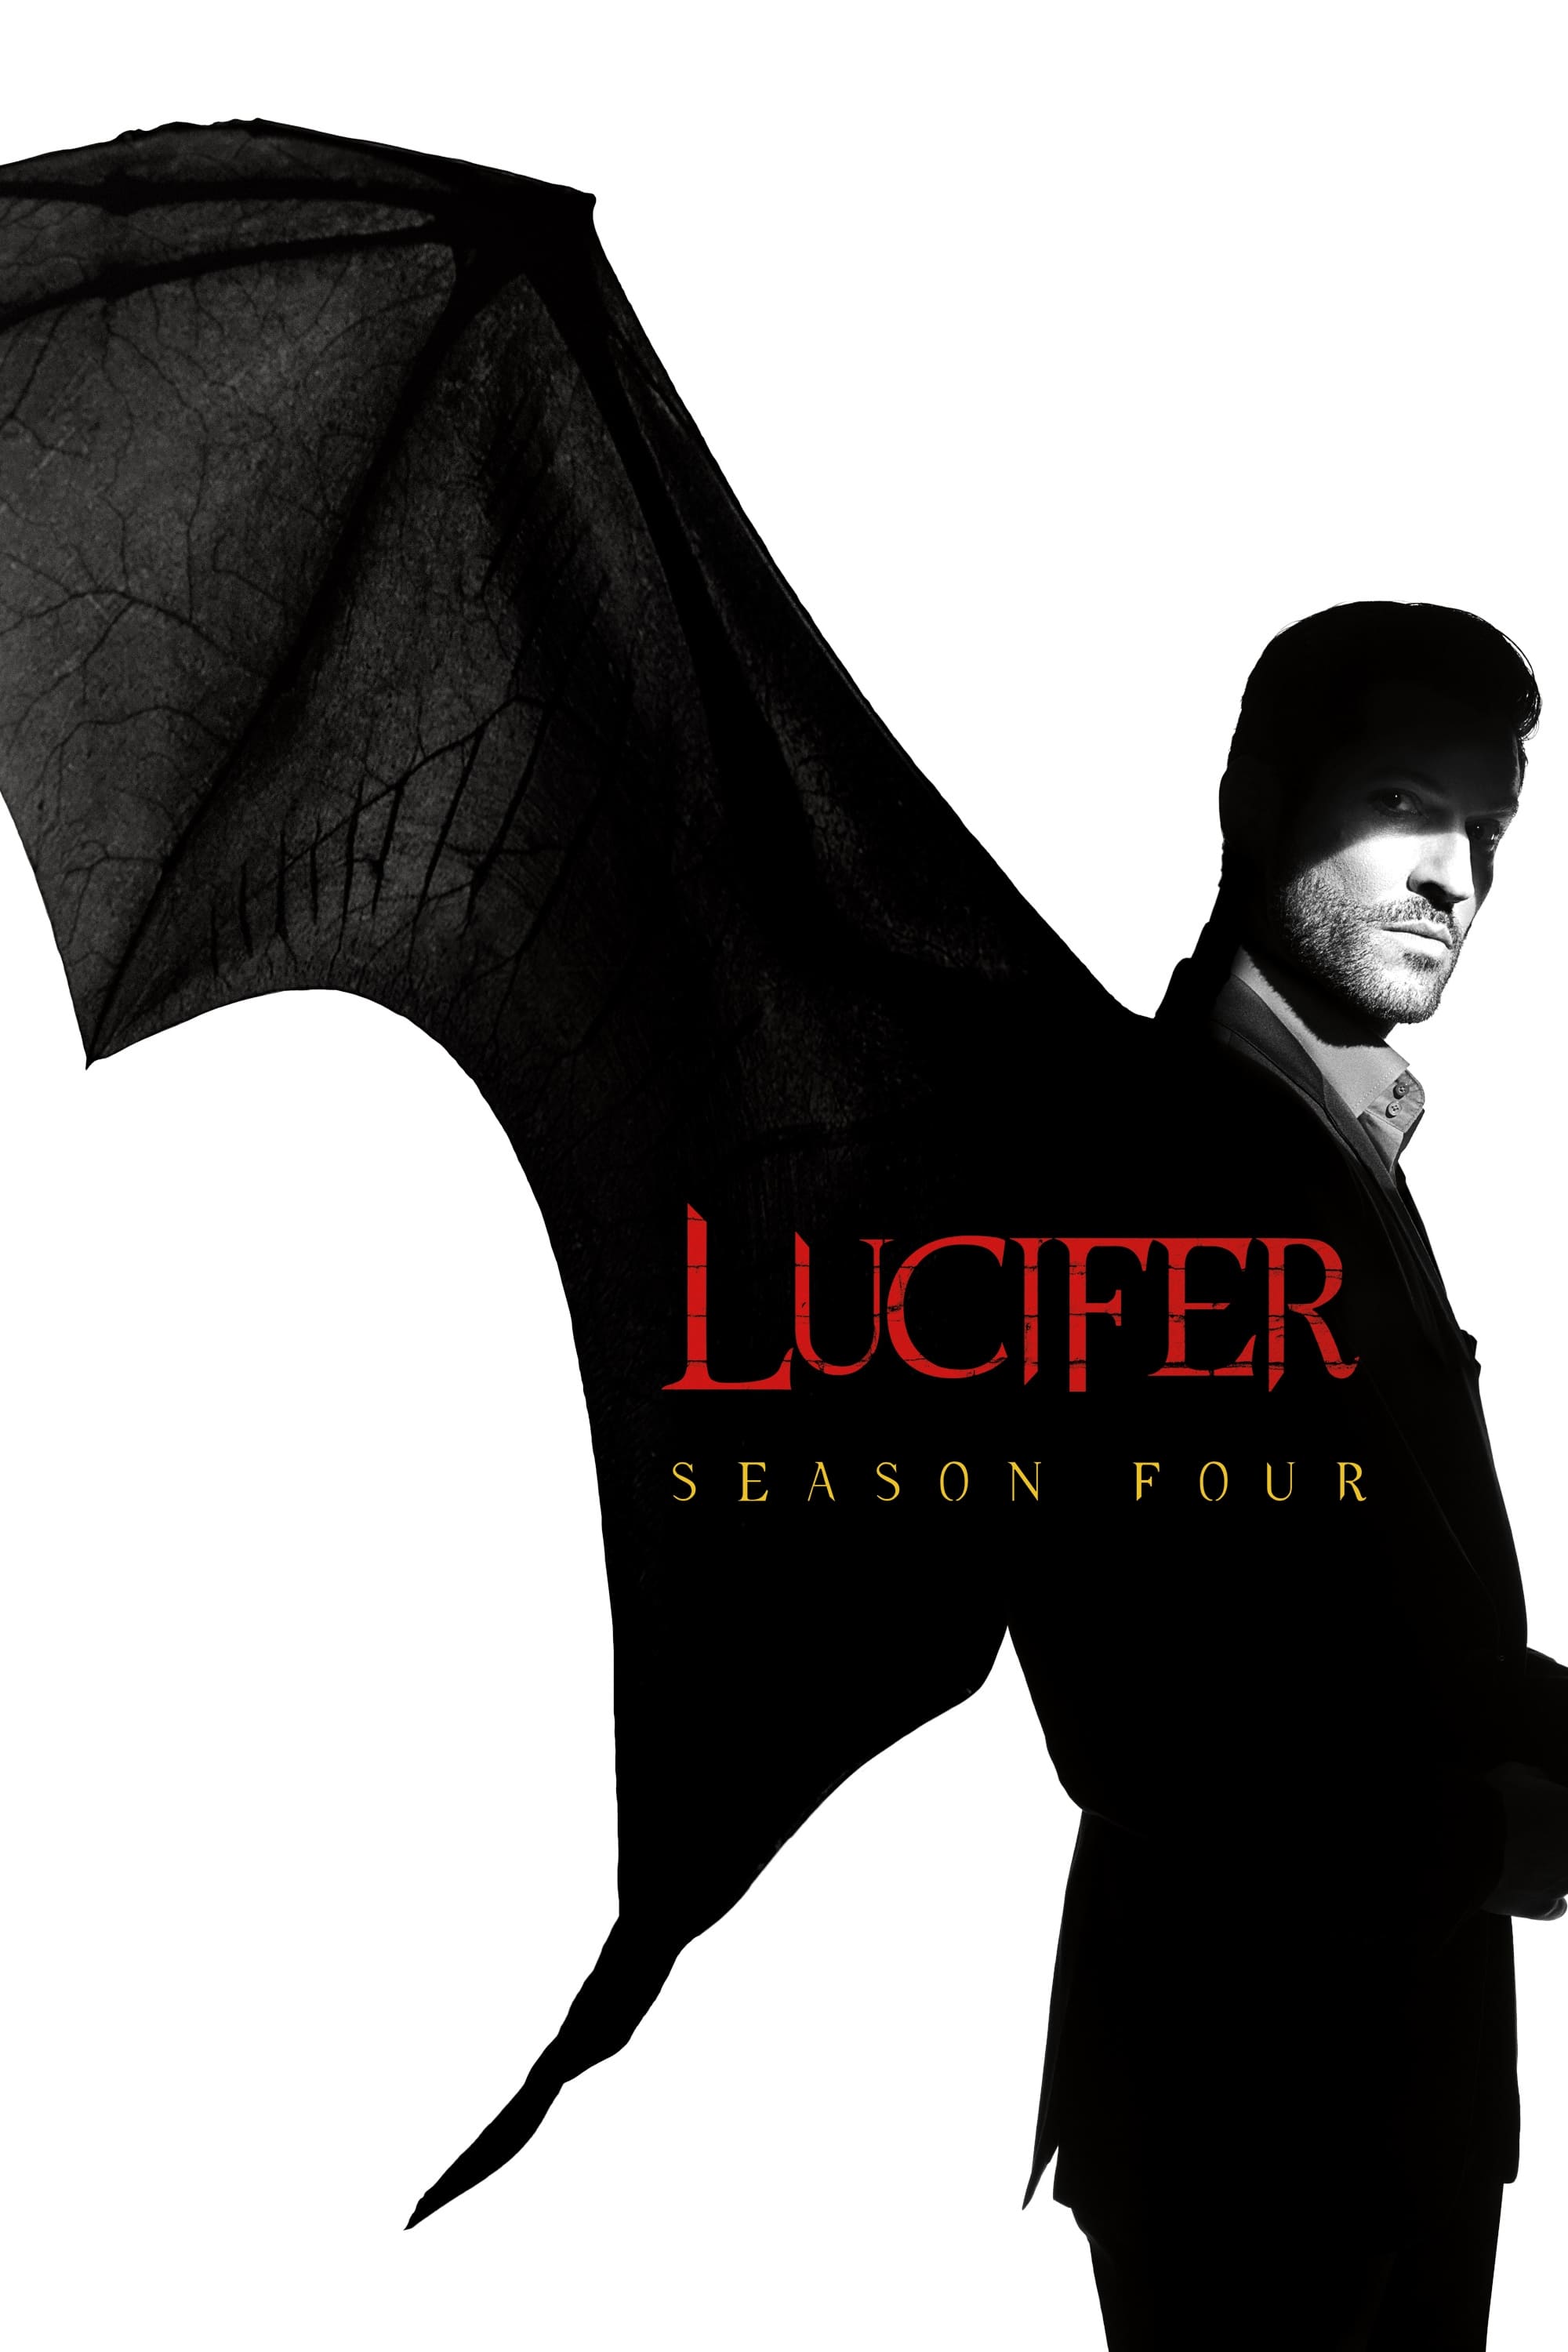 Lucifer Season 4